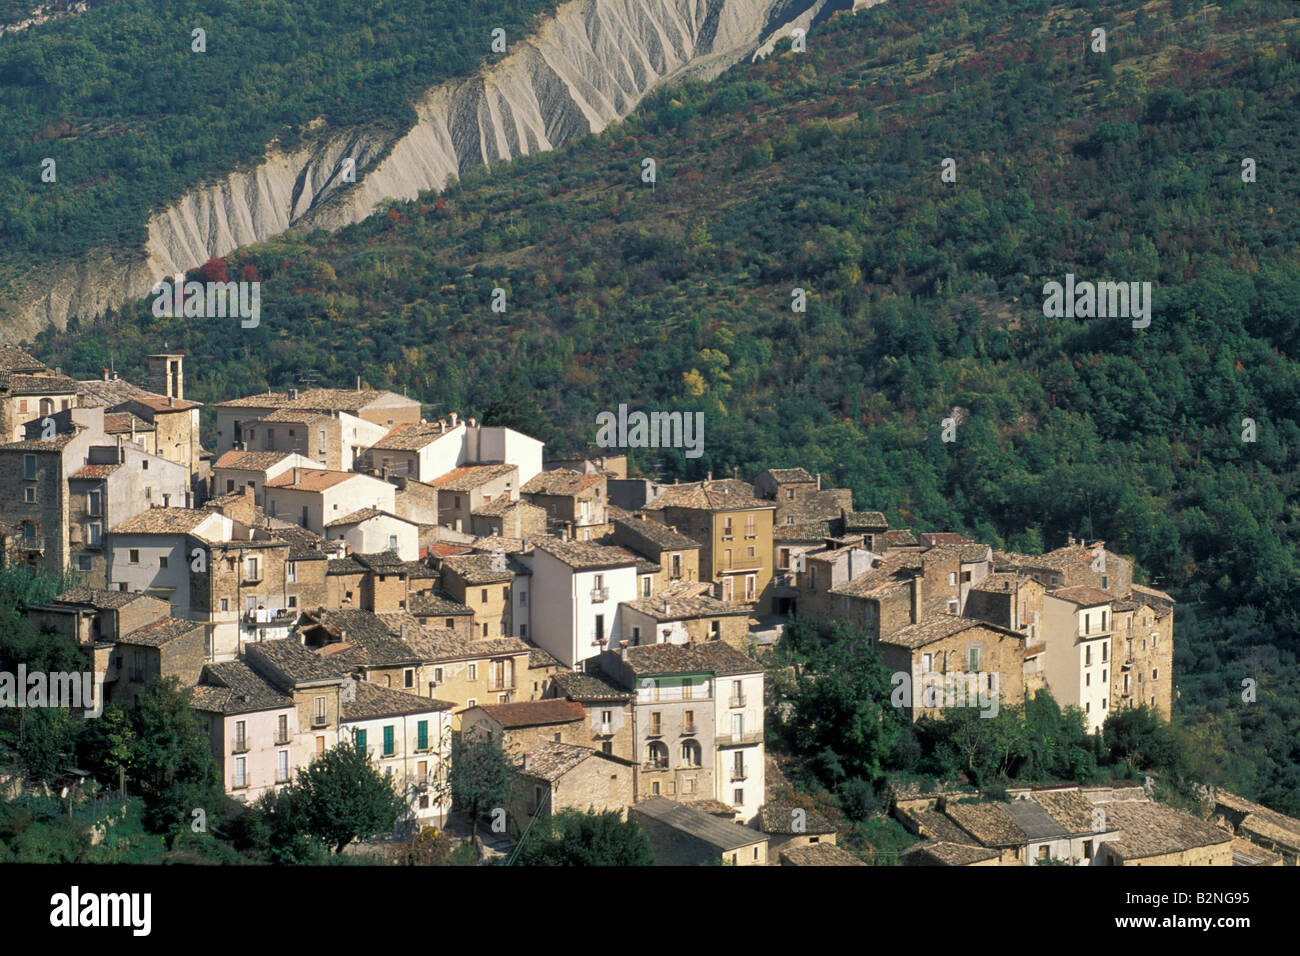 village view, anversa degli abruzzi, Italy Stock Photo